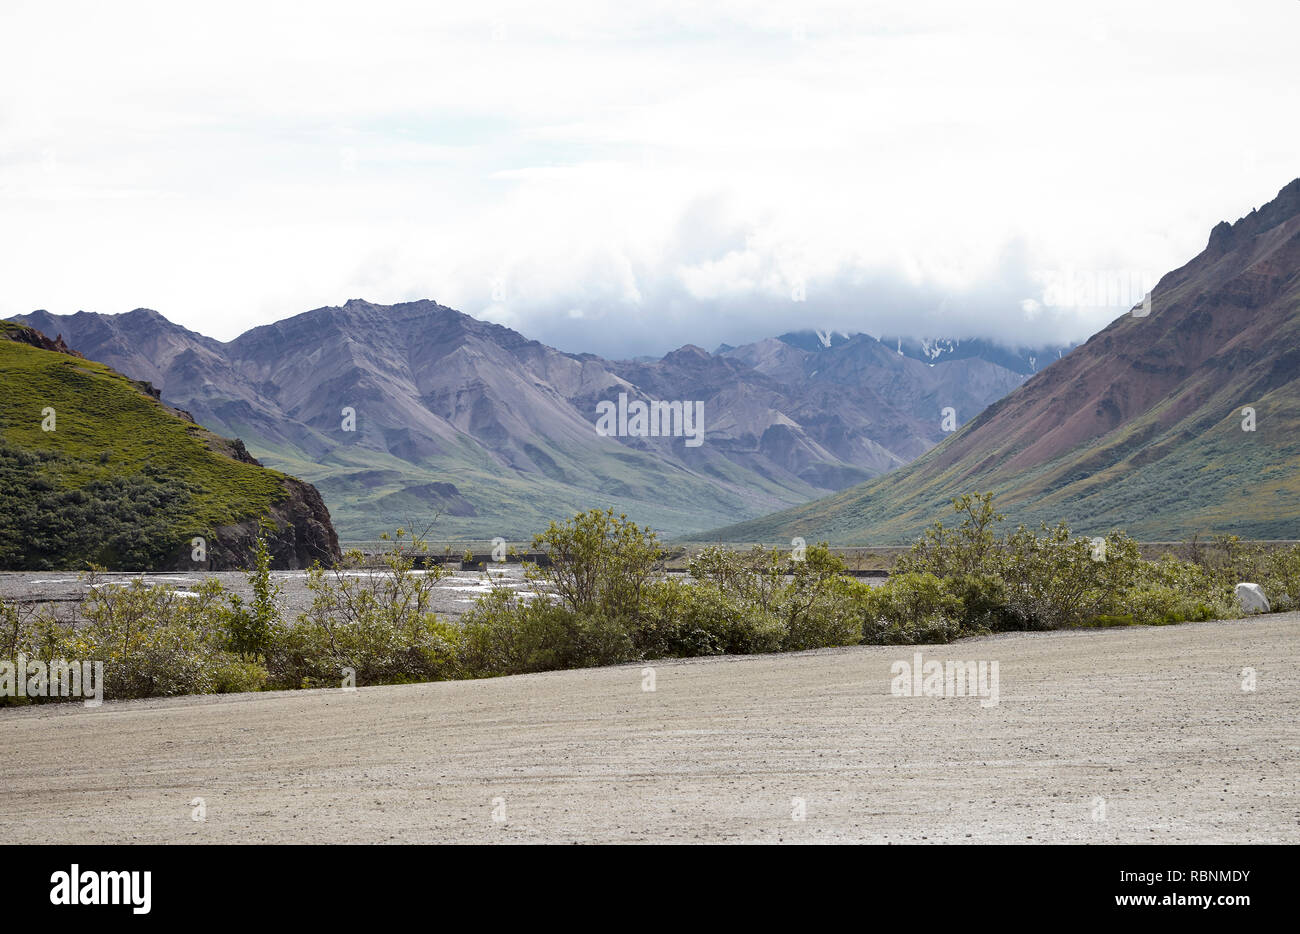 Letto asciutto del fiume in esecuzione attraverso la valle tra le montagne in Alaska Foto Stock